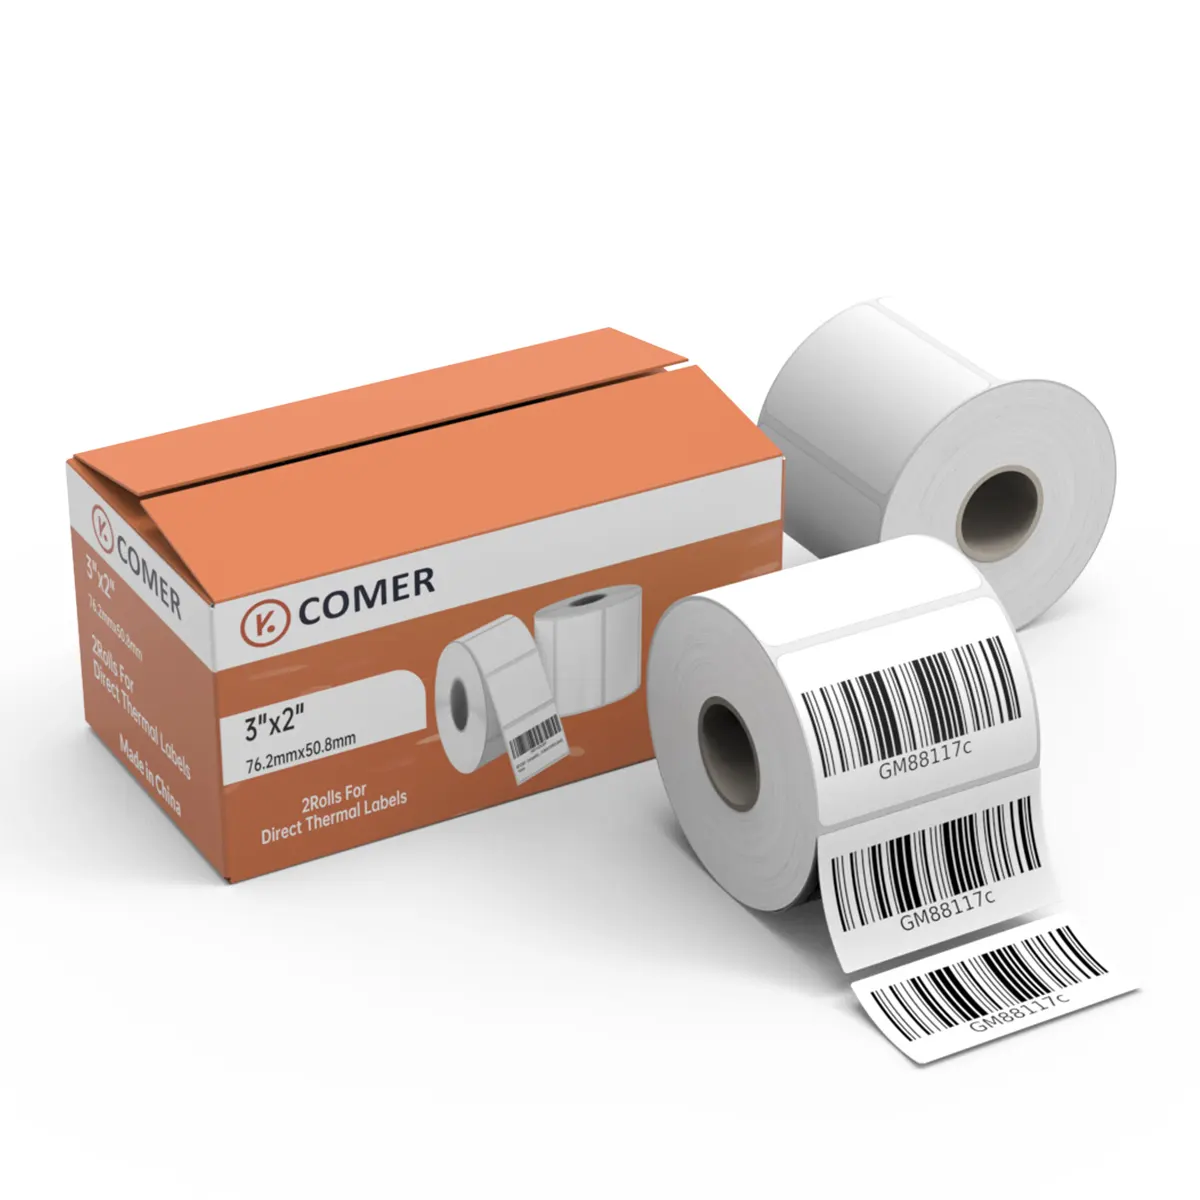 K COMER Labels - 3 "x 2" прямые термоэтикетки доставка этикеток